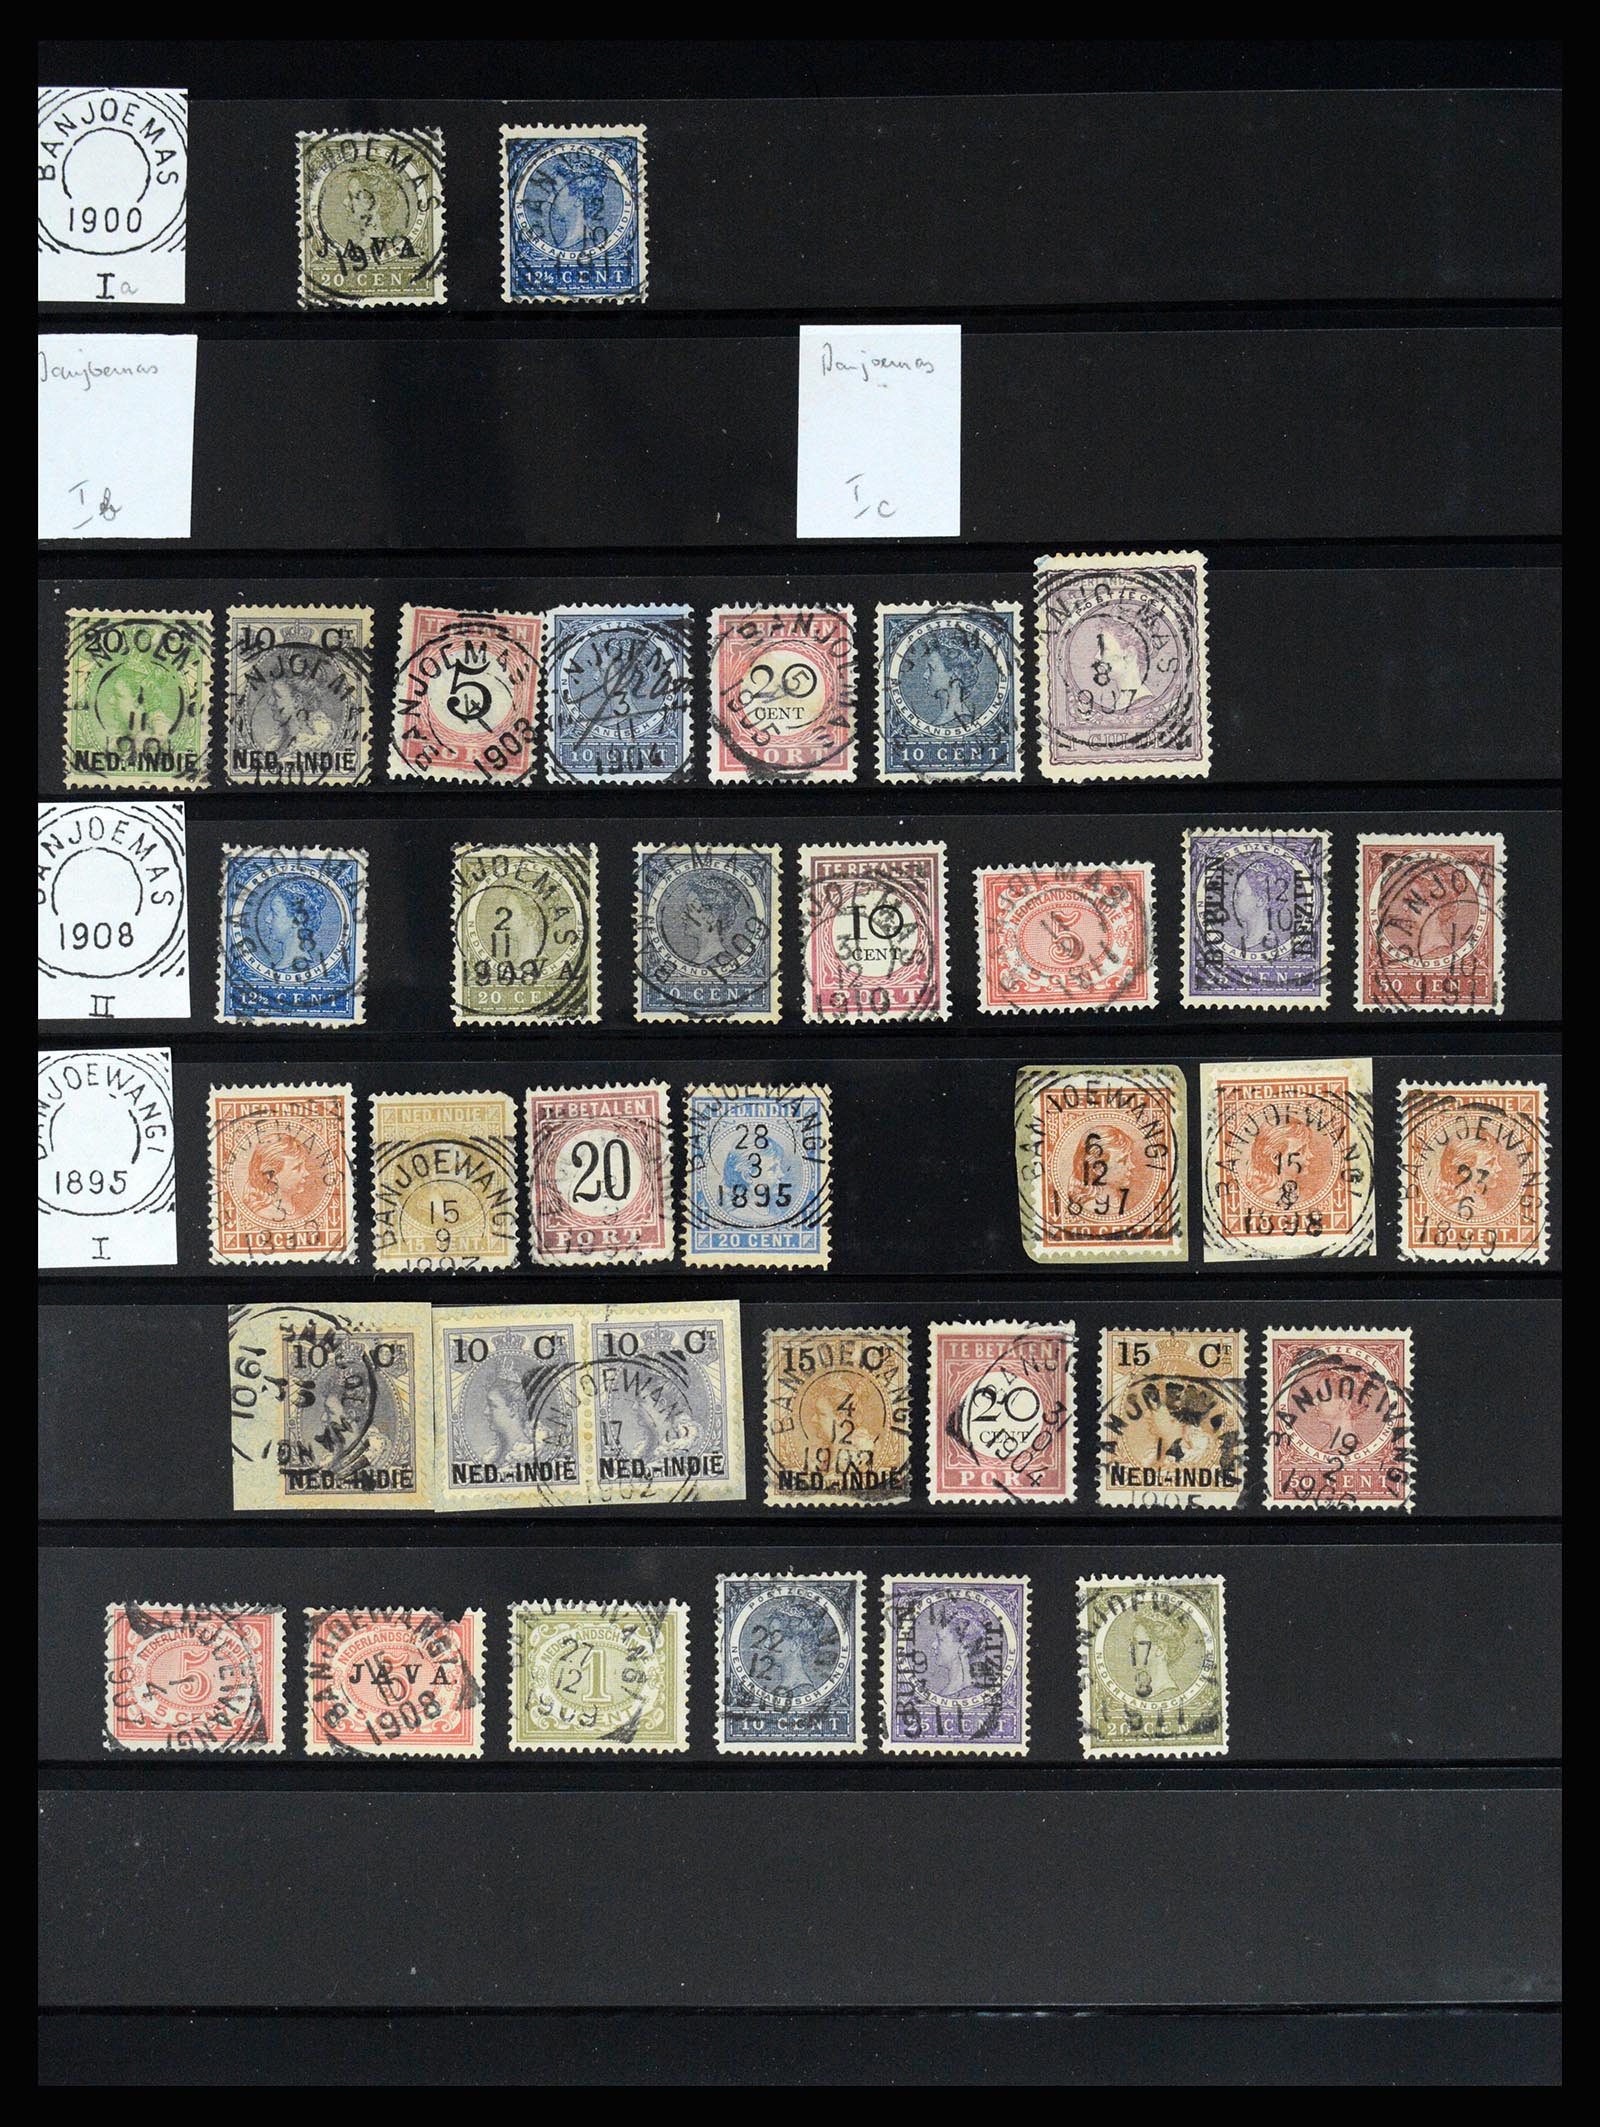 36512 106 - Stamp collection 36512 Nederlands Indië stempels 1872-1930.